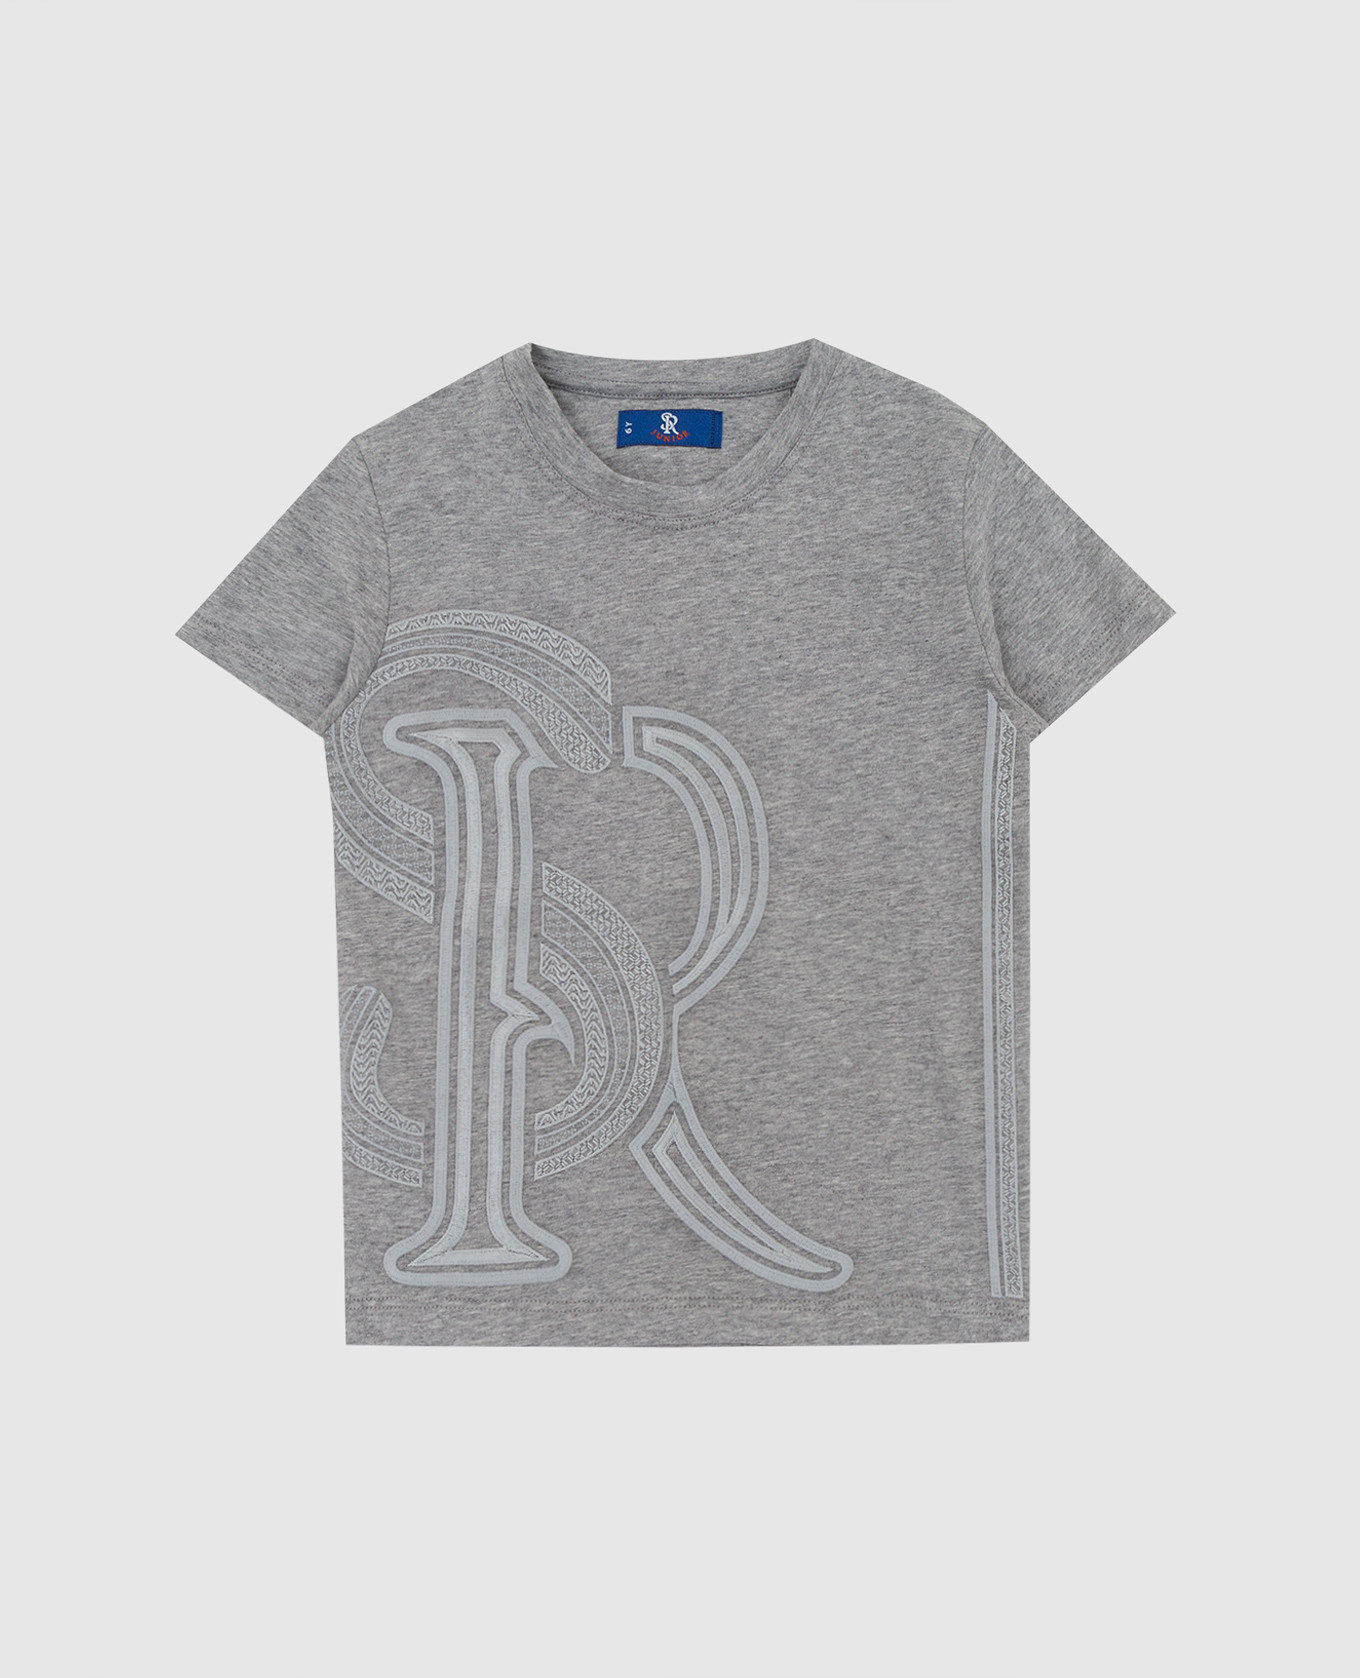 Stefano Ricci Детская светло-серая футболка с вышивкой монограммы YNH0300290803